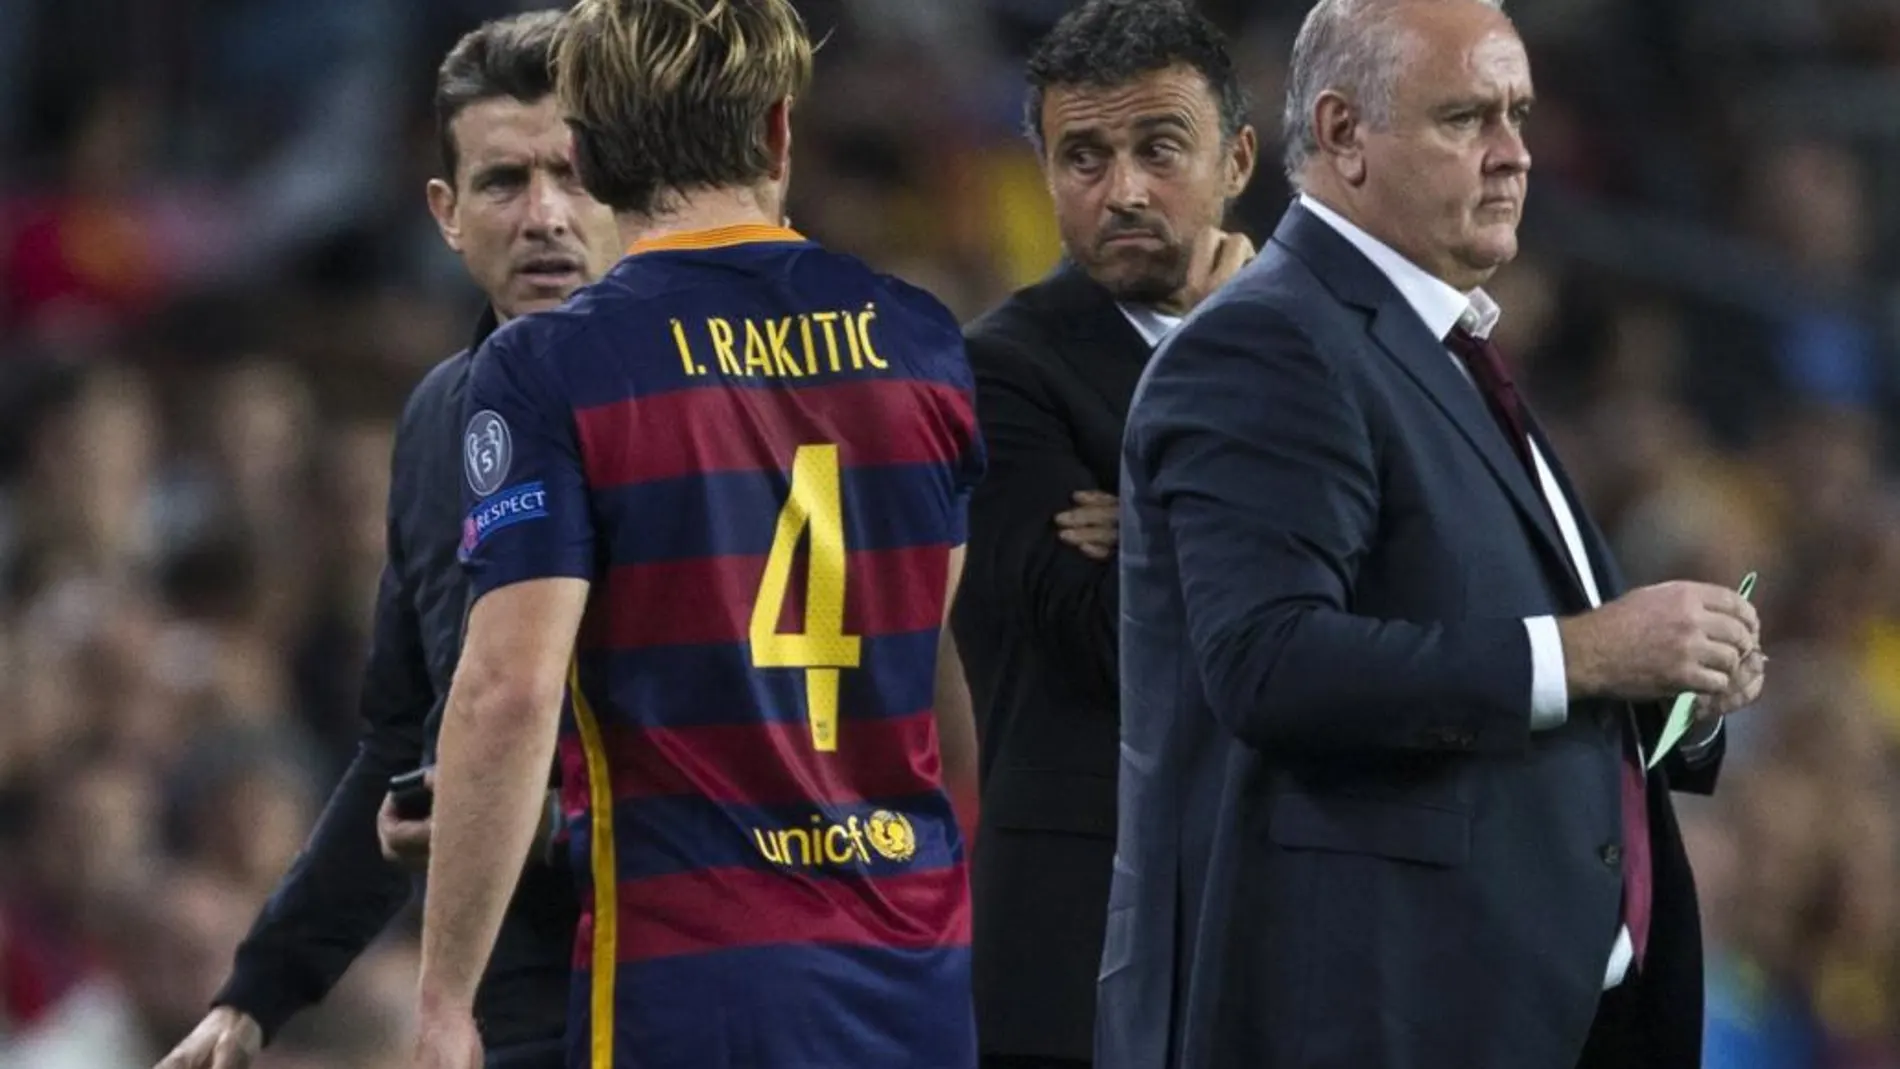 El centrocampista croata del FC Barcelona Ivan Rakitic, tras ser sustituido, junto al entrenador del FC Barcelona, Luis Enrique (2d), durante el partido frente al Bate Borisov